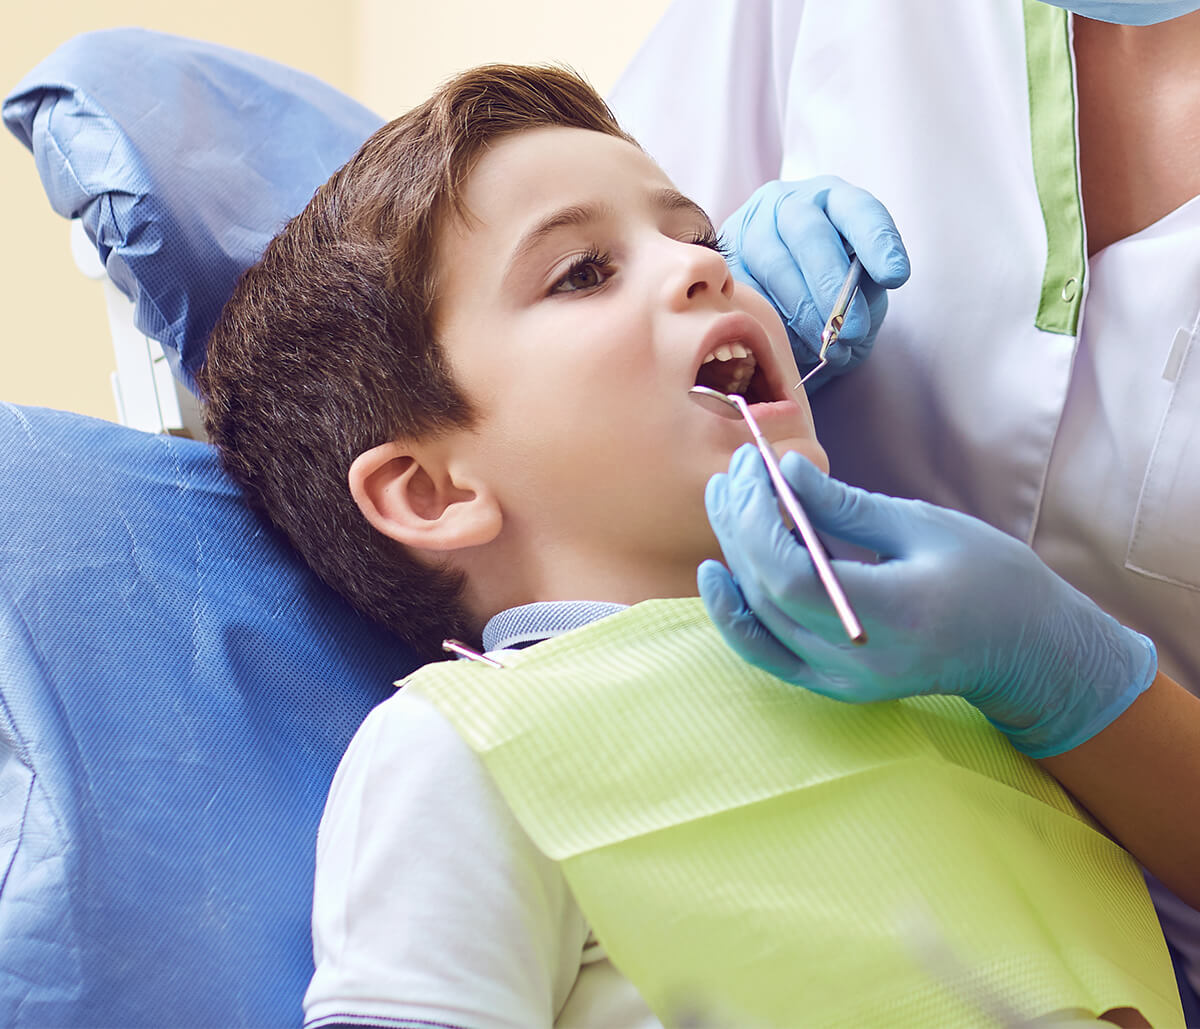 Dentistry for Children in Alpharetta Area